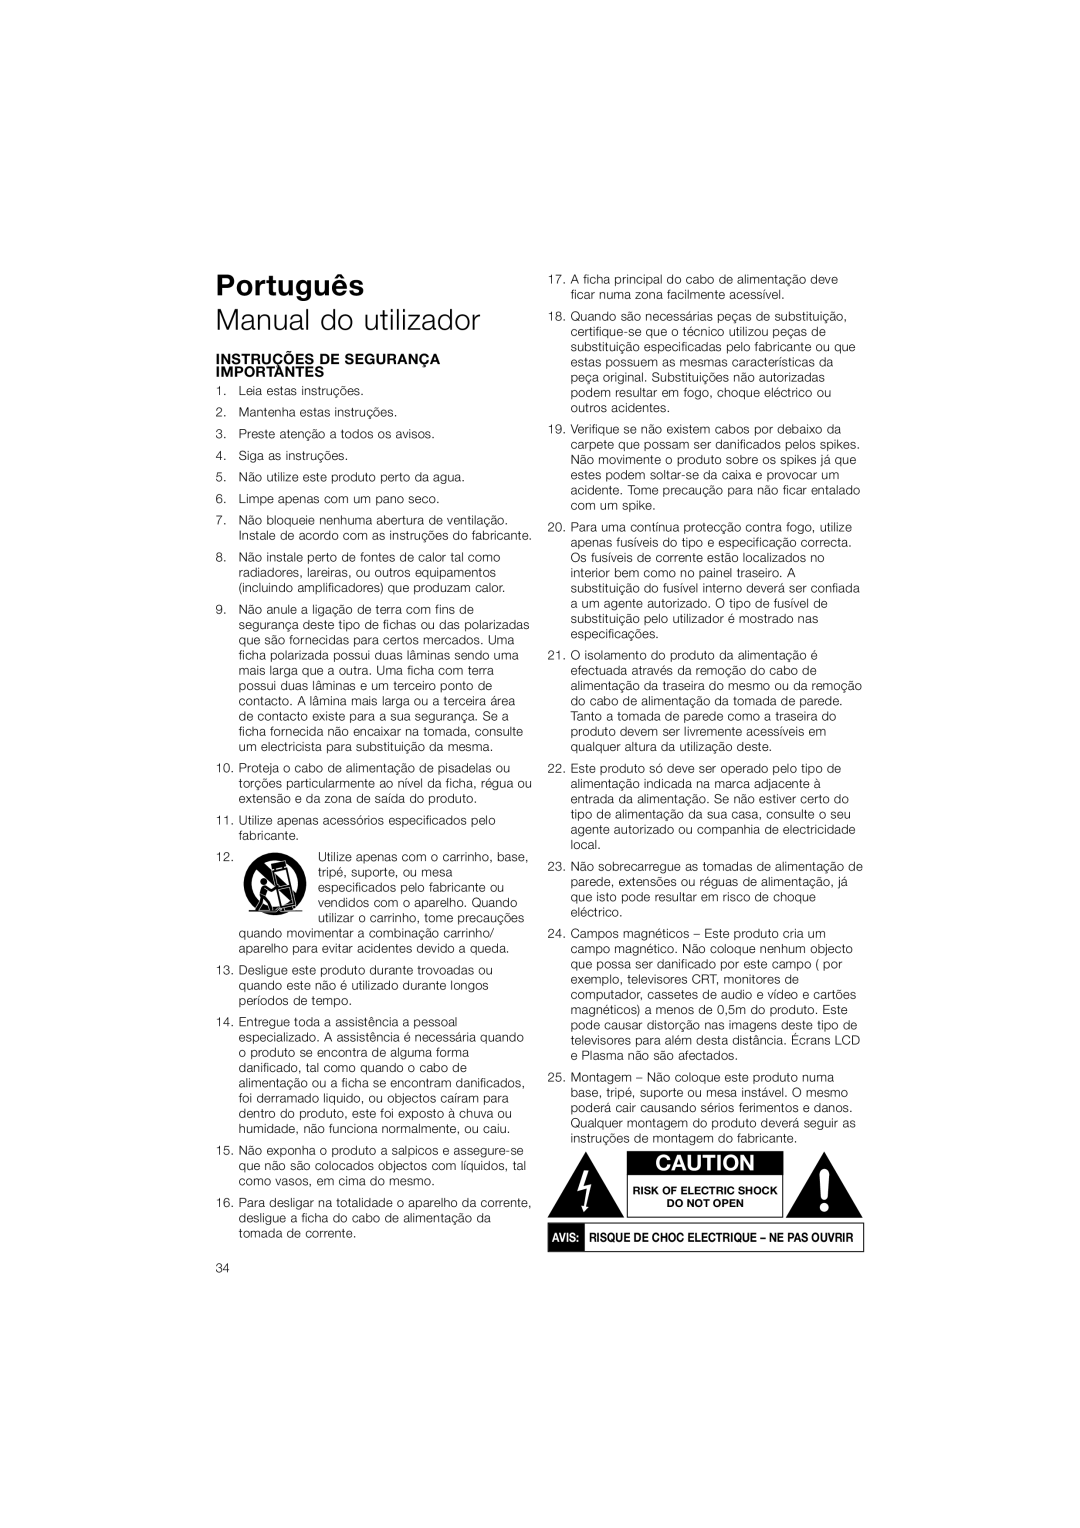 Bowers & Wilkins ASW608, ASW610XP owner manual Português, Manual do utilizador, Instruções De Segurança Importantes 